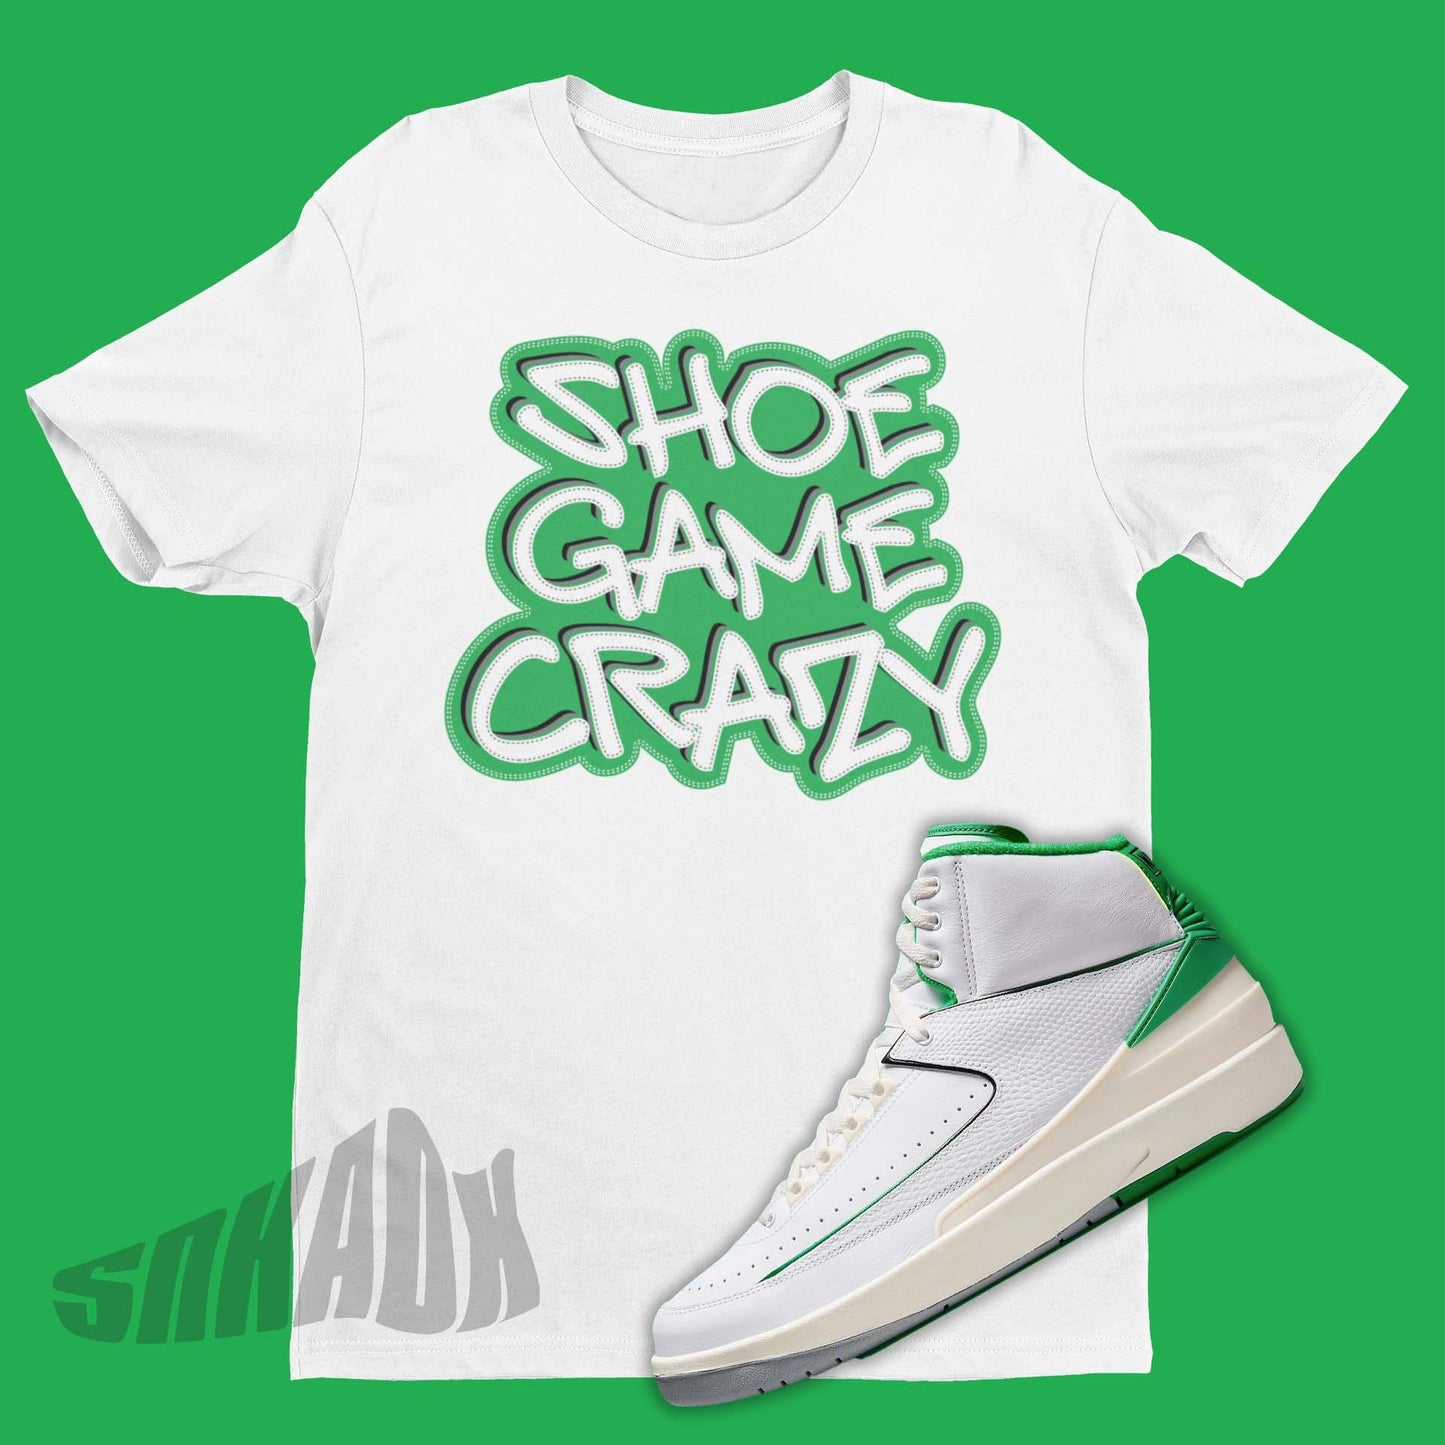 Shoe Game Crazy Shirt For Matching Air Jordan 2 Lucky Green